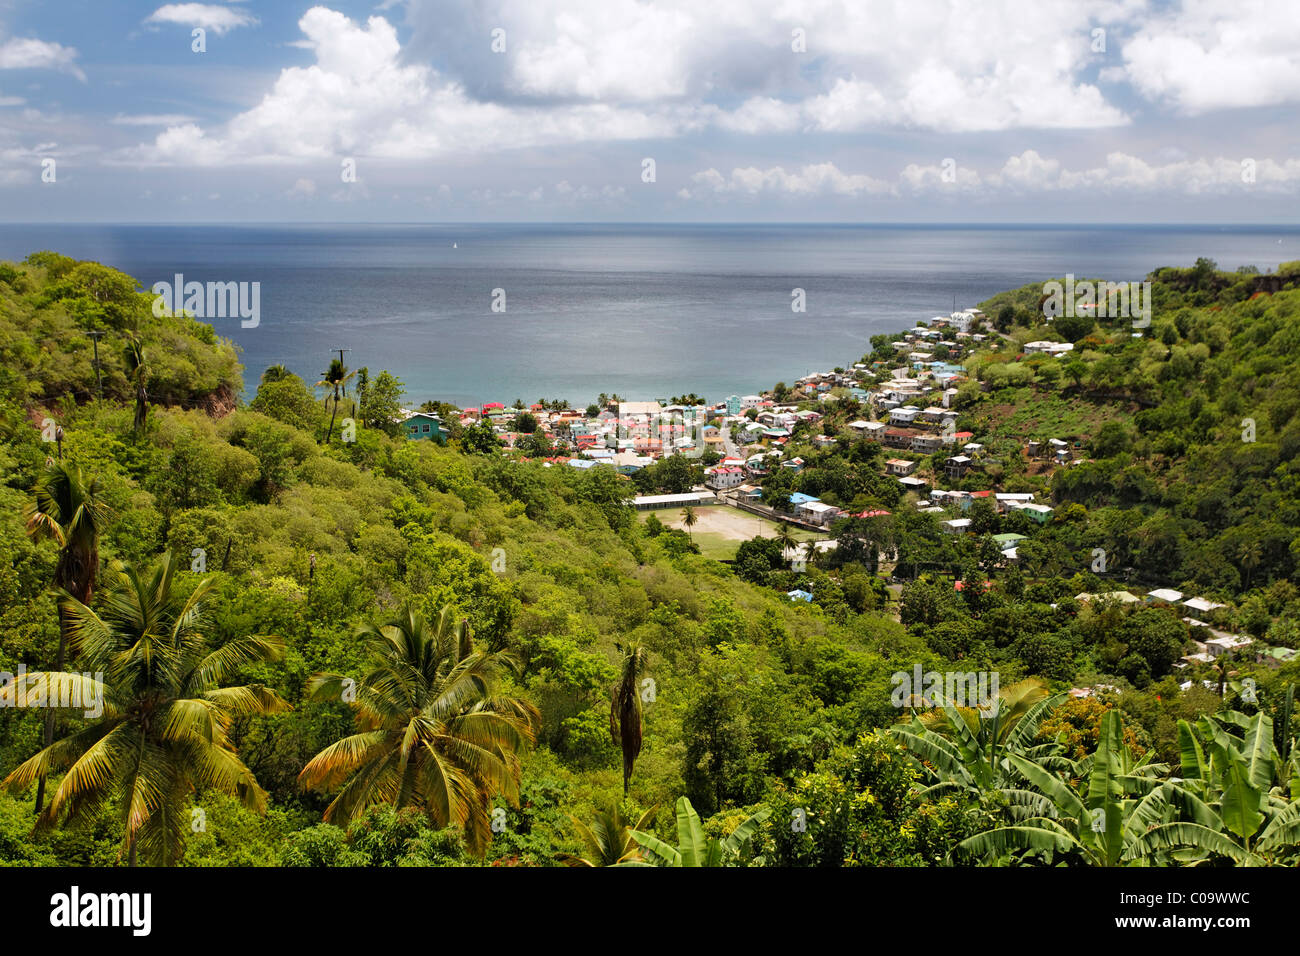 Verde paisaje tropical de la isla, la bahía, el mar, la ciudad, Canarias, Santa Lucía, ACV, Islas de Barlovento, Antillas Menores, el Caribe Foto de stock